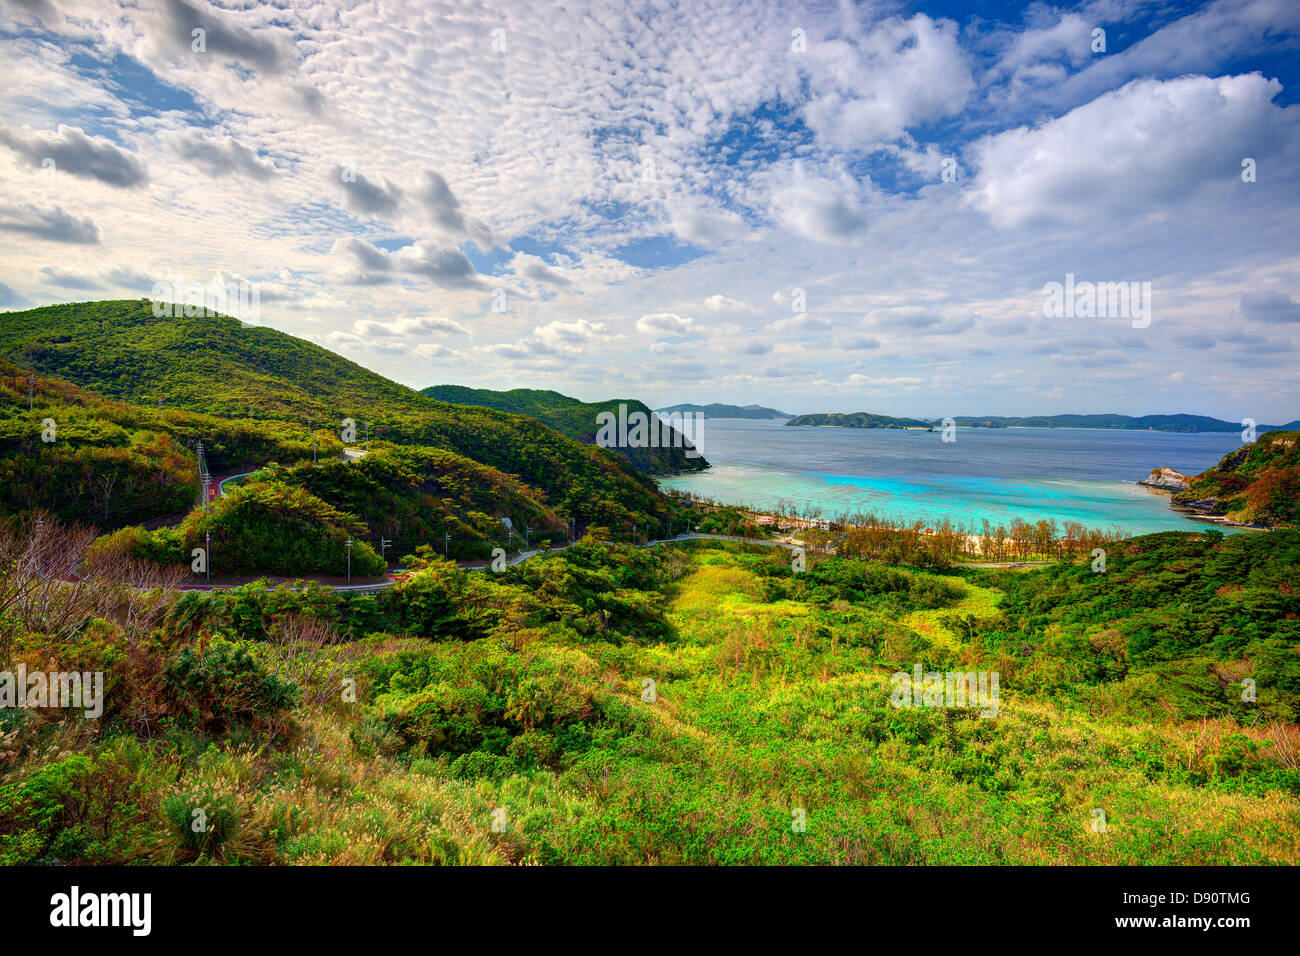 Paysage sur l'île de Tokashiki, Okinawa, Japon. Banque D'Images